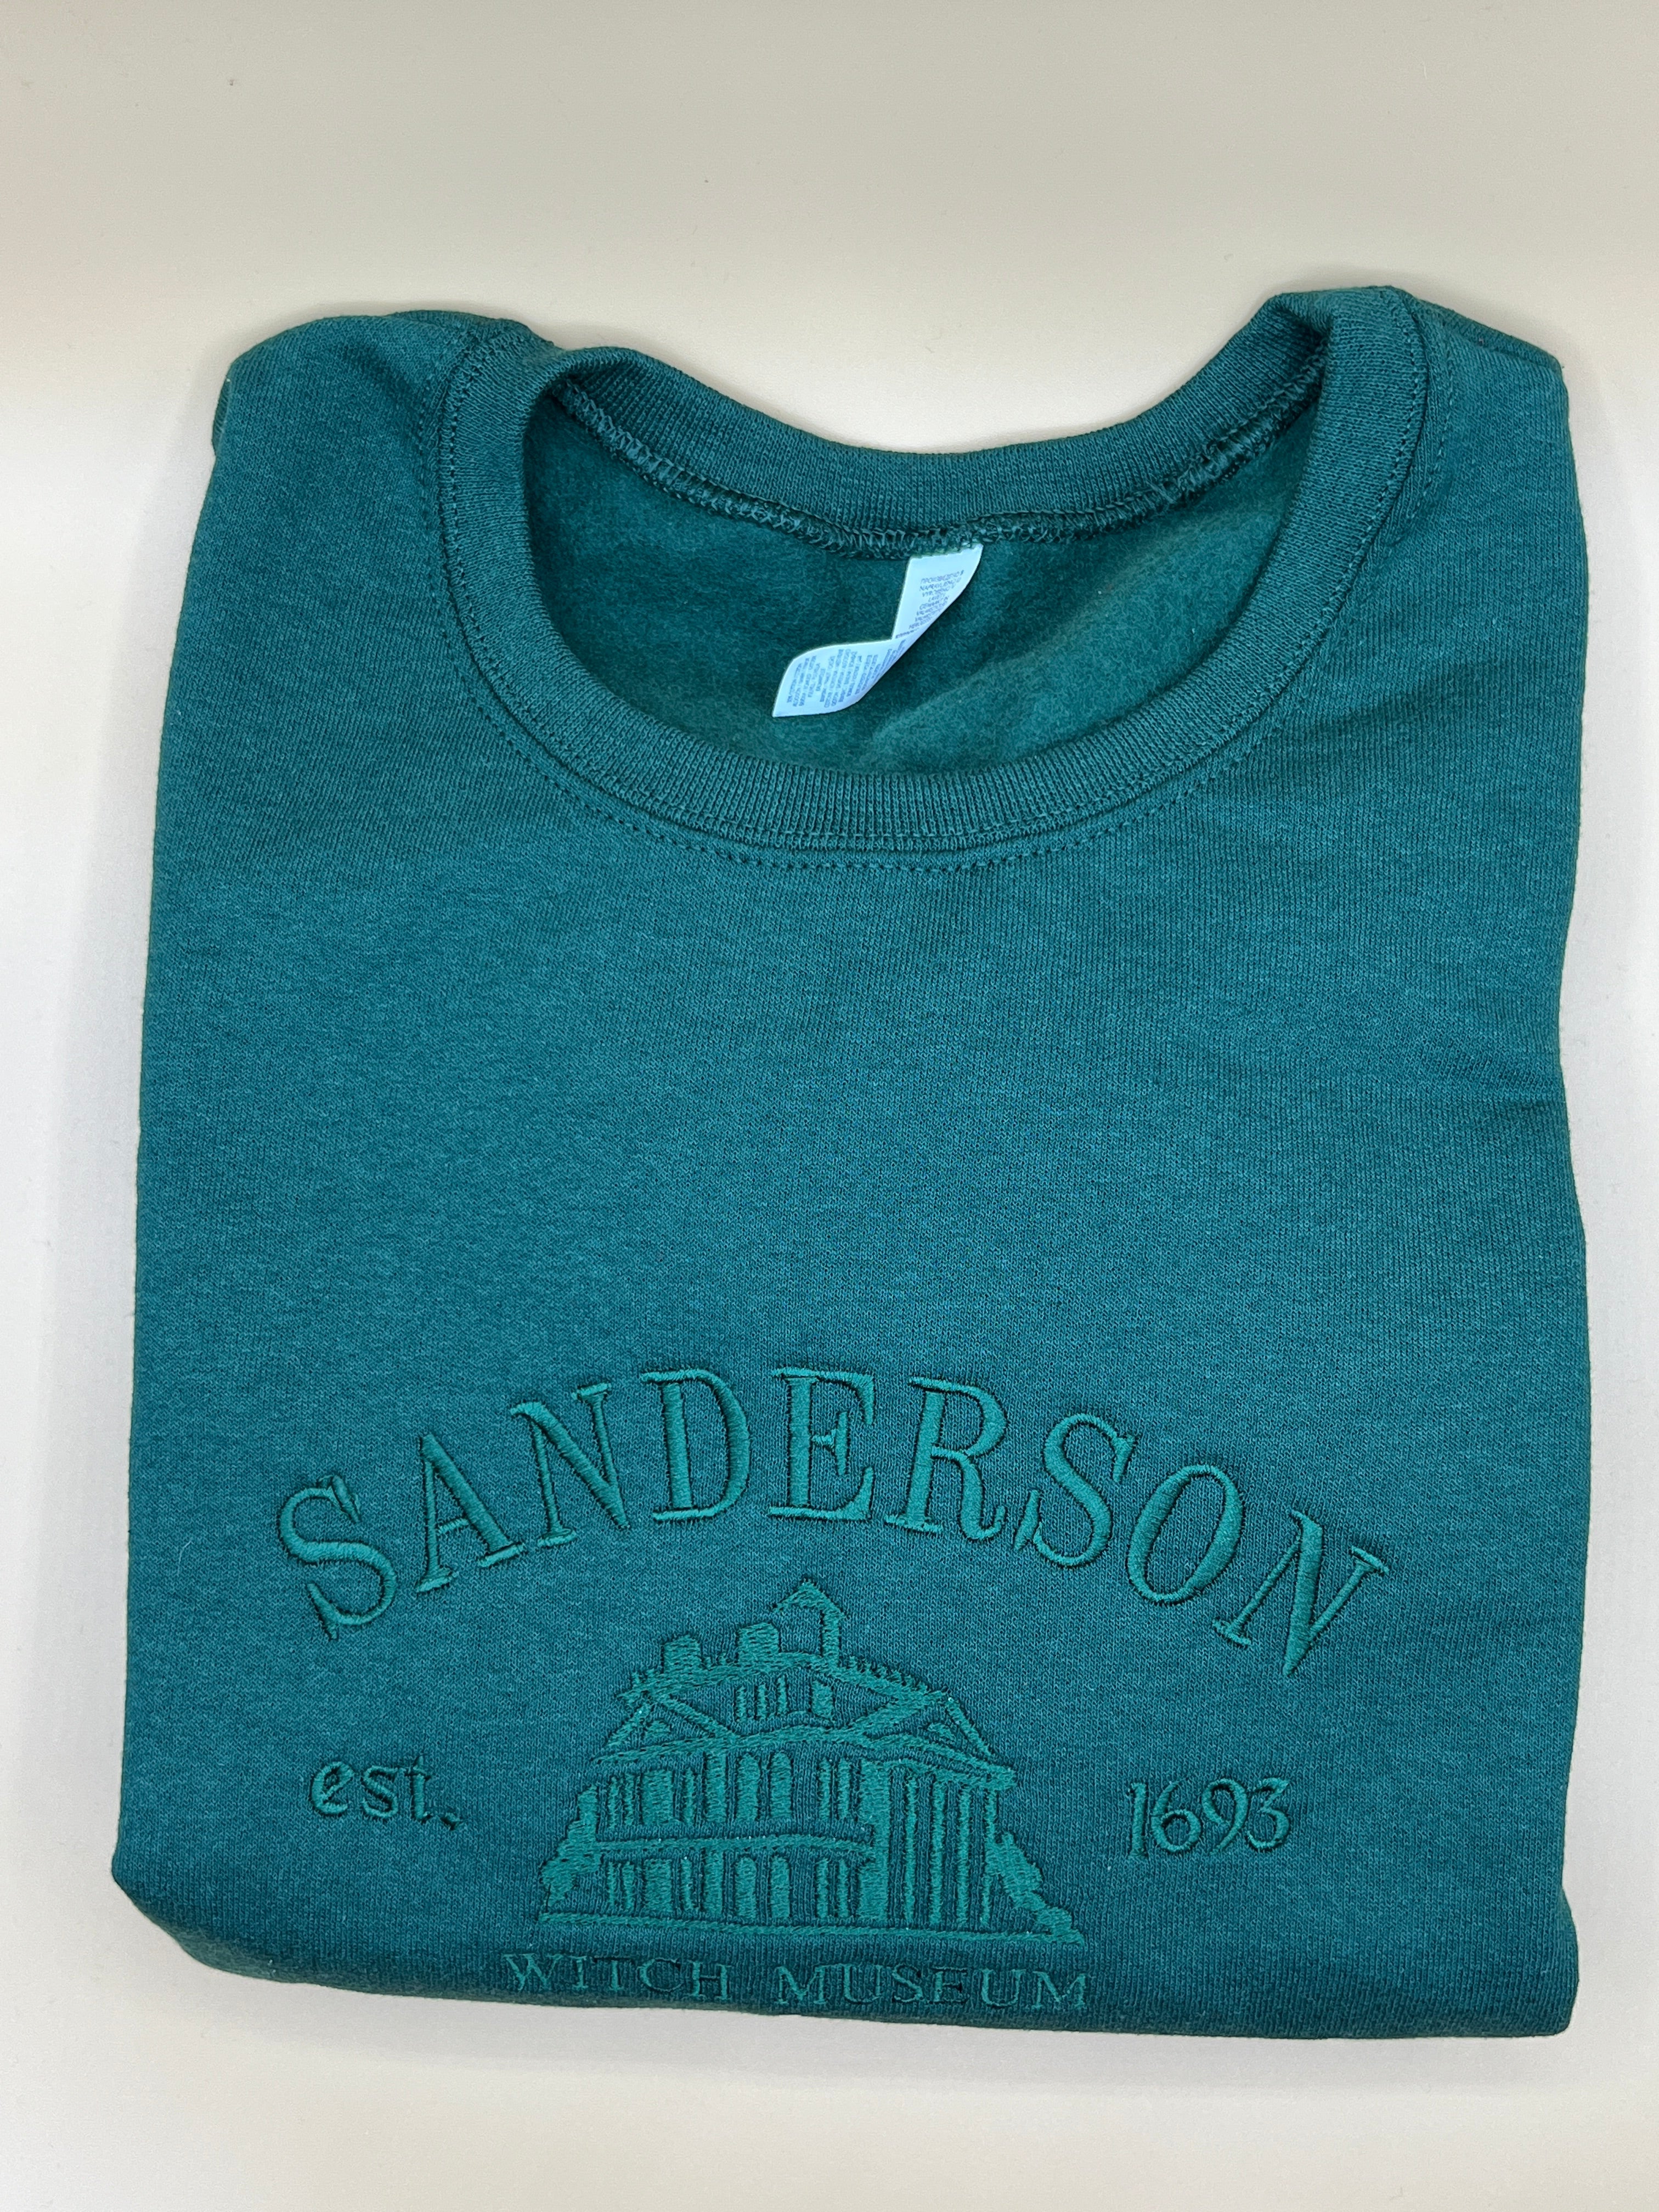 Sanderson Sisters sweatshirt